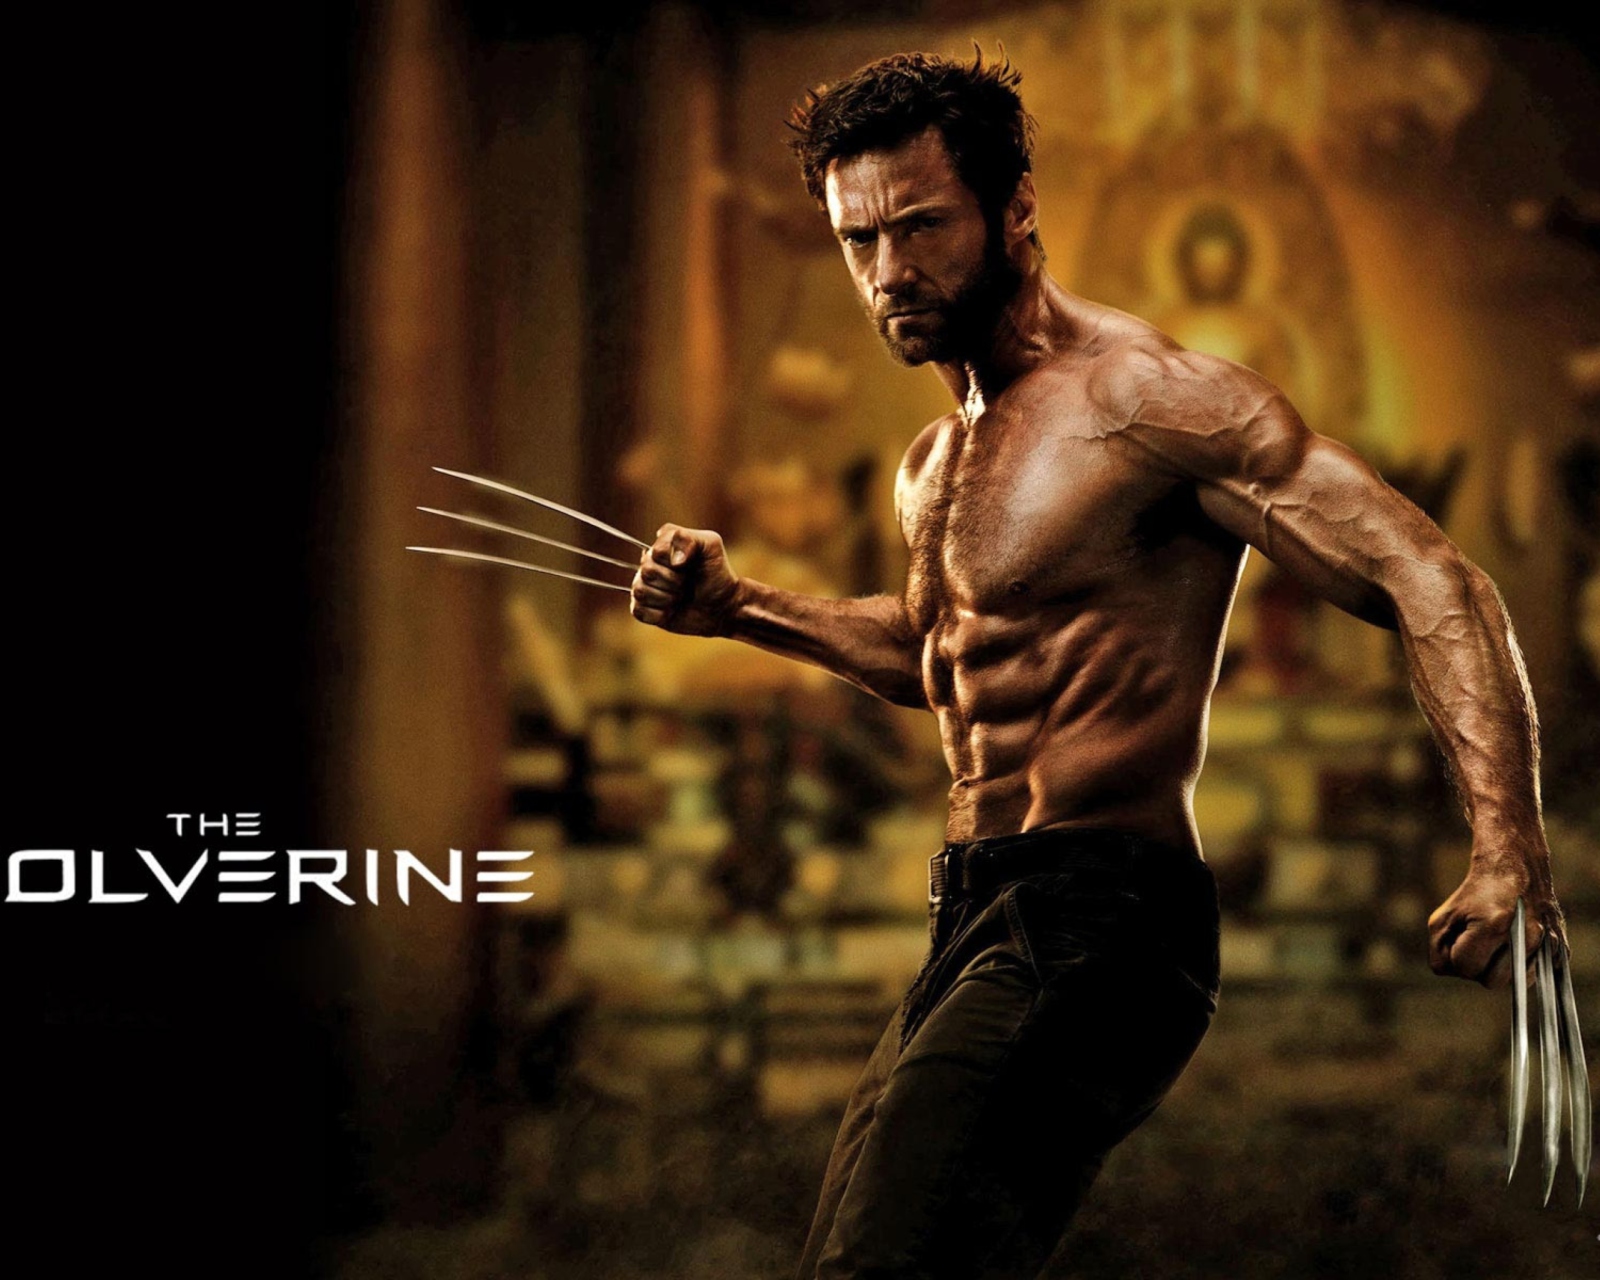 Das The Wolverine 2013 Movie Wallpaper 1600x1280